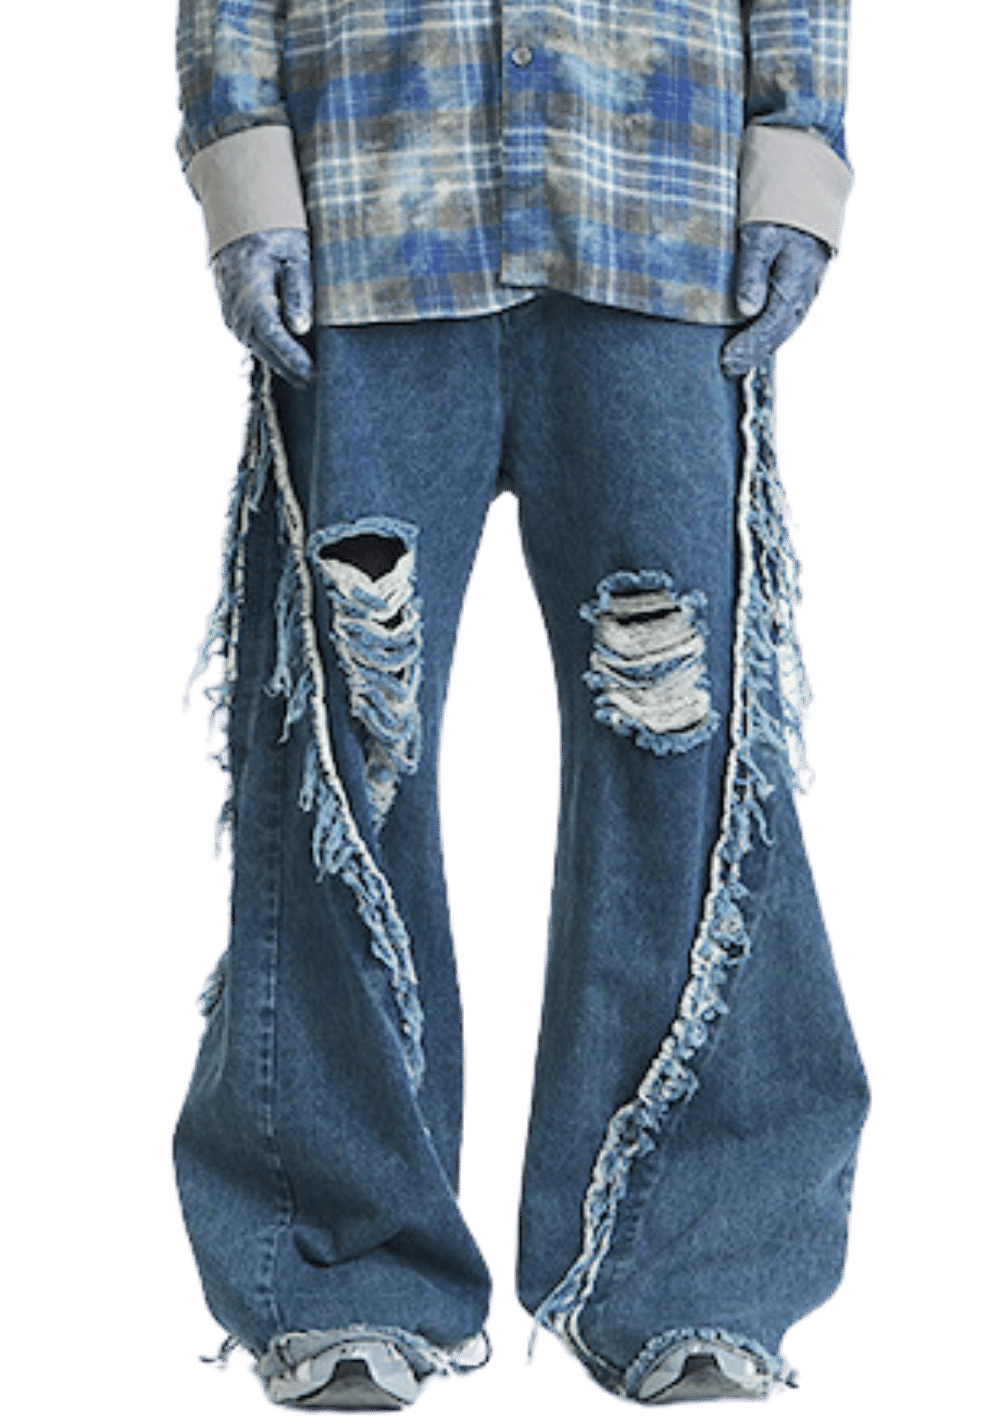 Segmented Washed Denim Jeans - PSYLOS 1, Segmented Washed Denim Jeans, Pants, RELABEL, PSYLOS 1